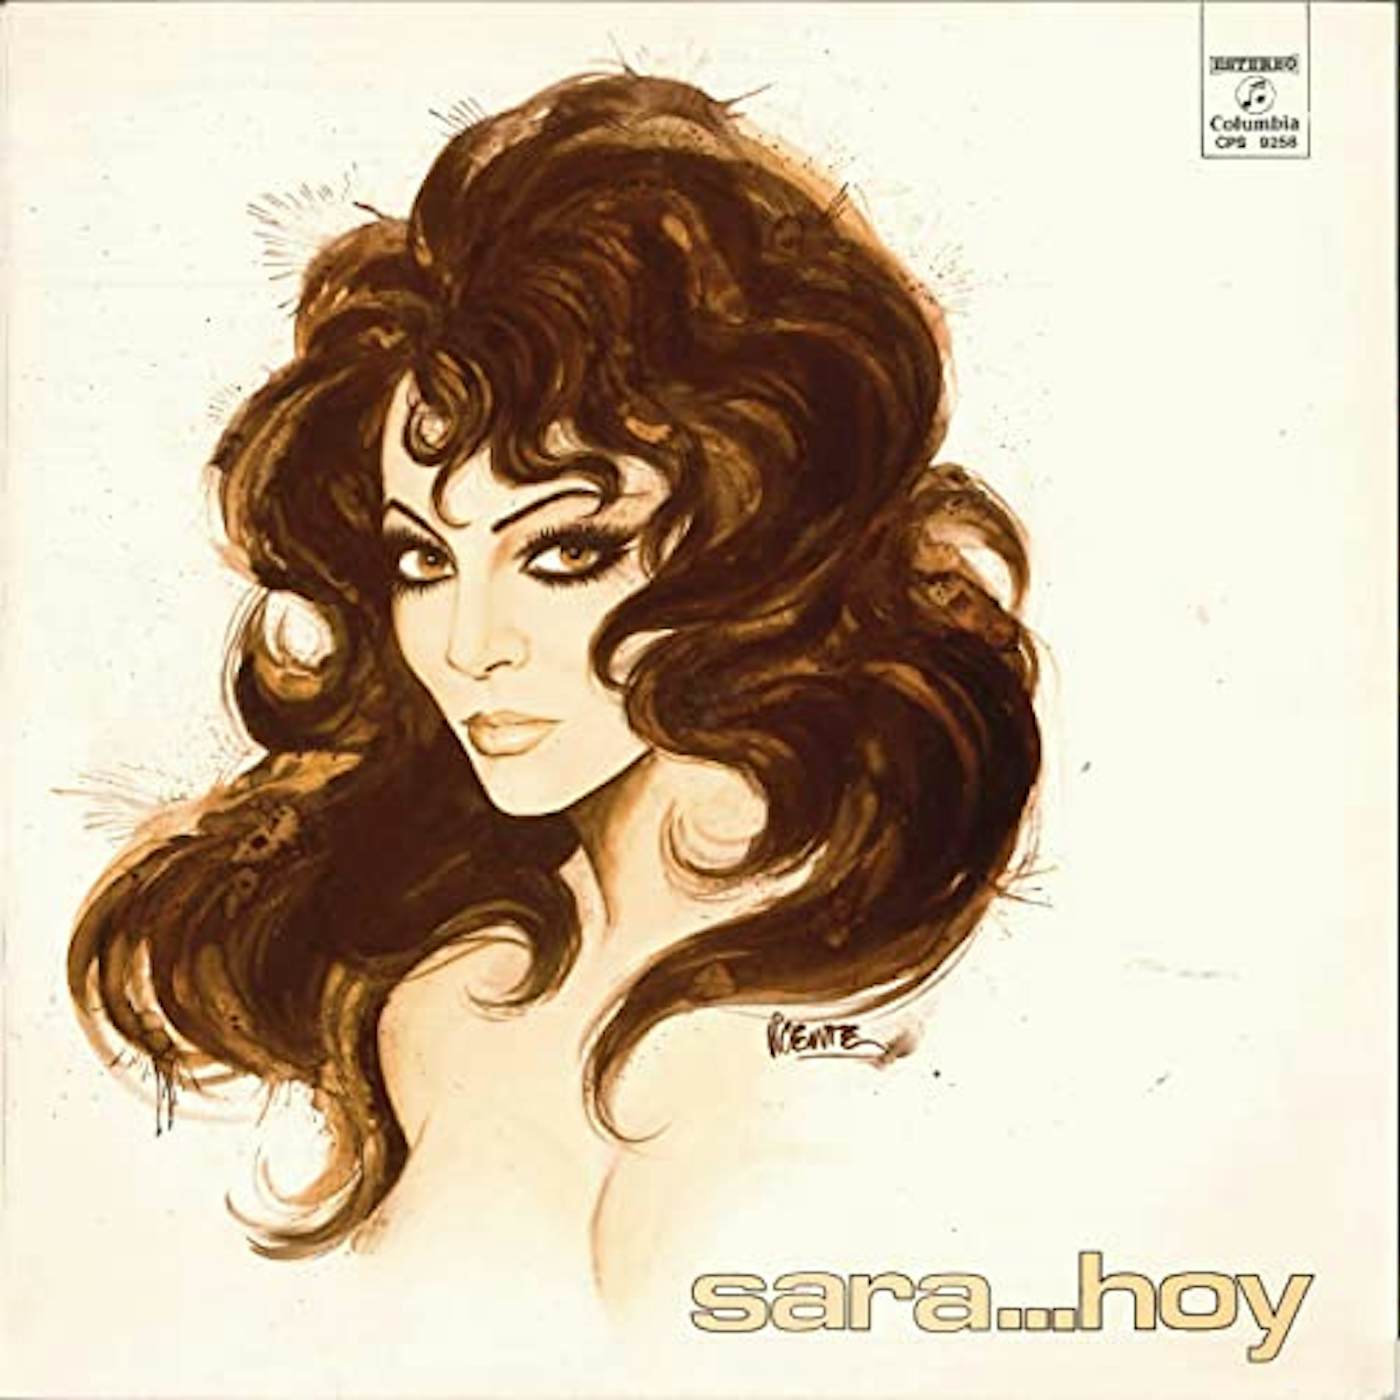 Sara Montiel SARA HOY Vinyl Record